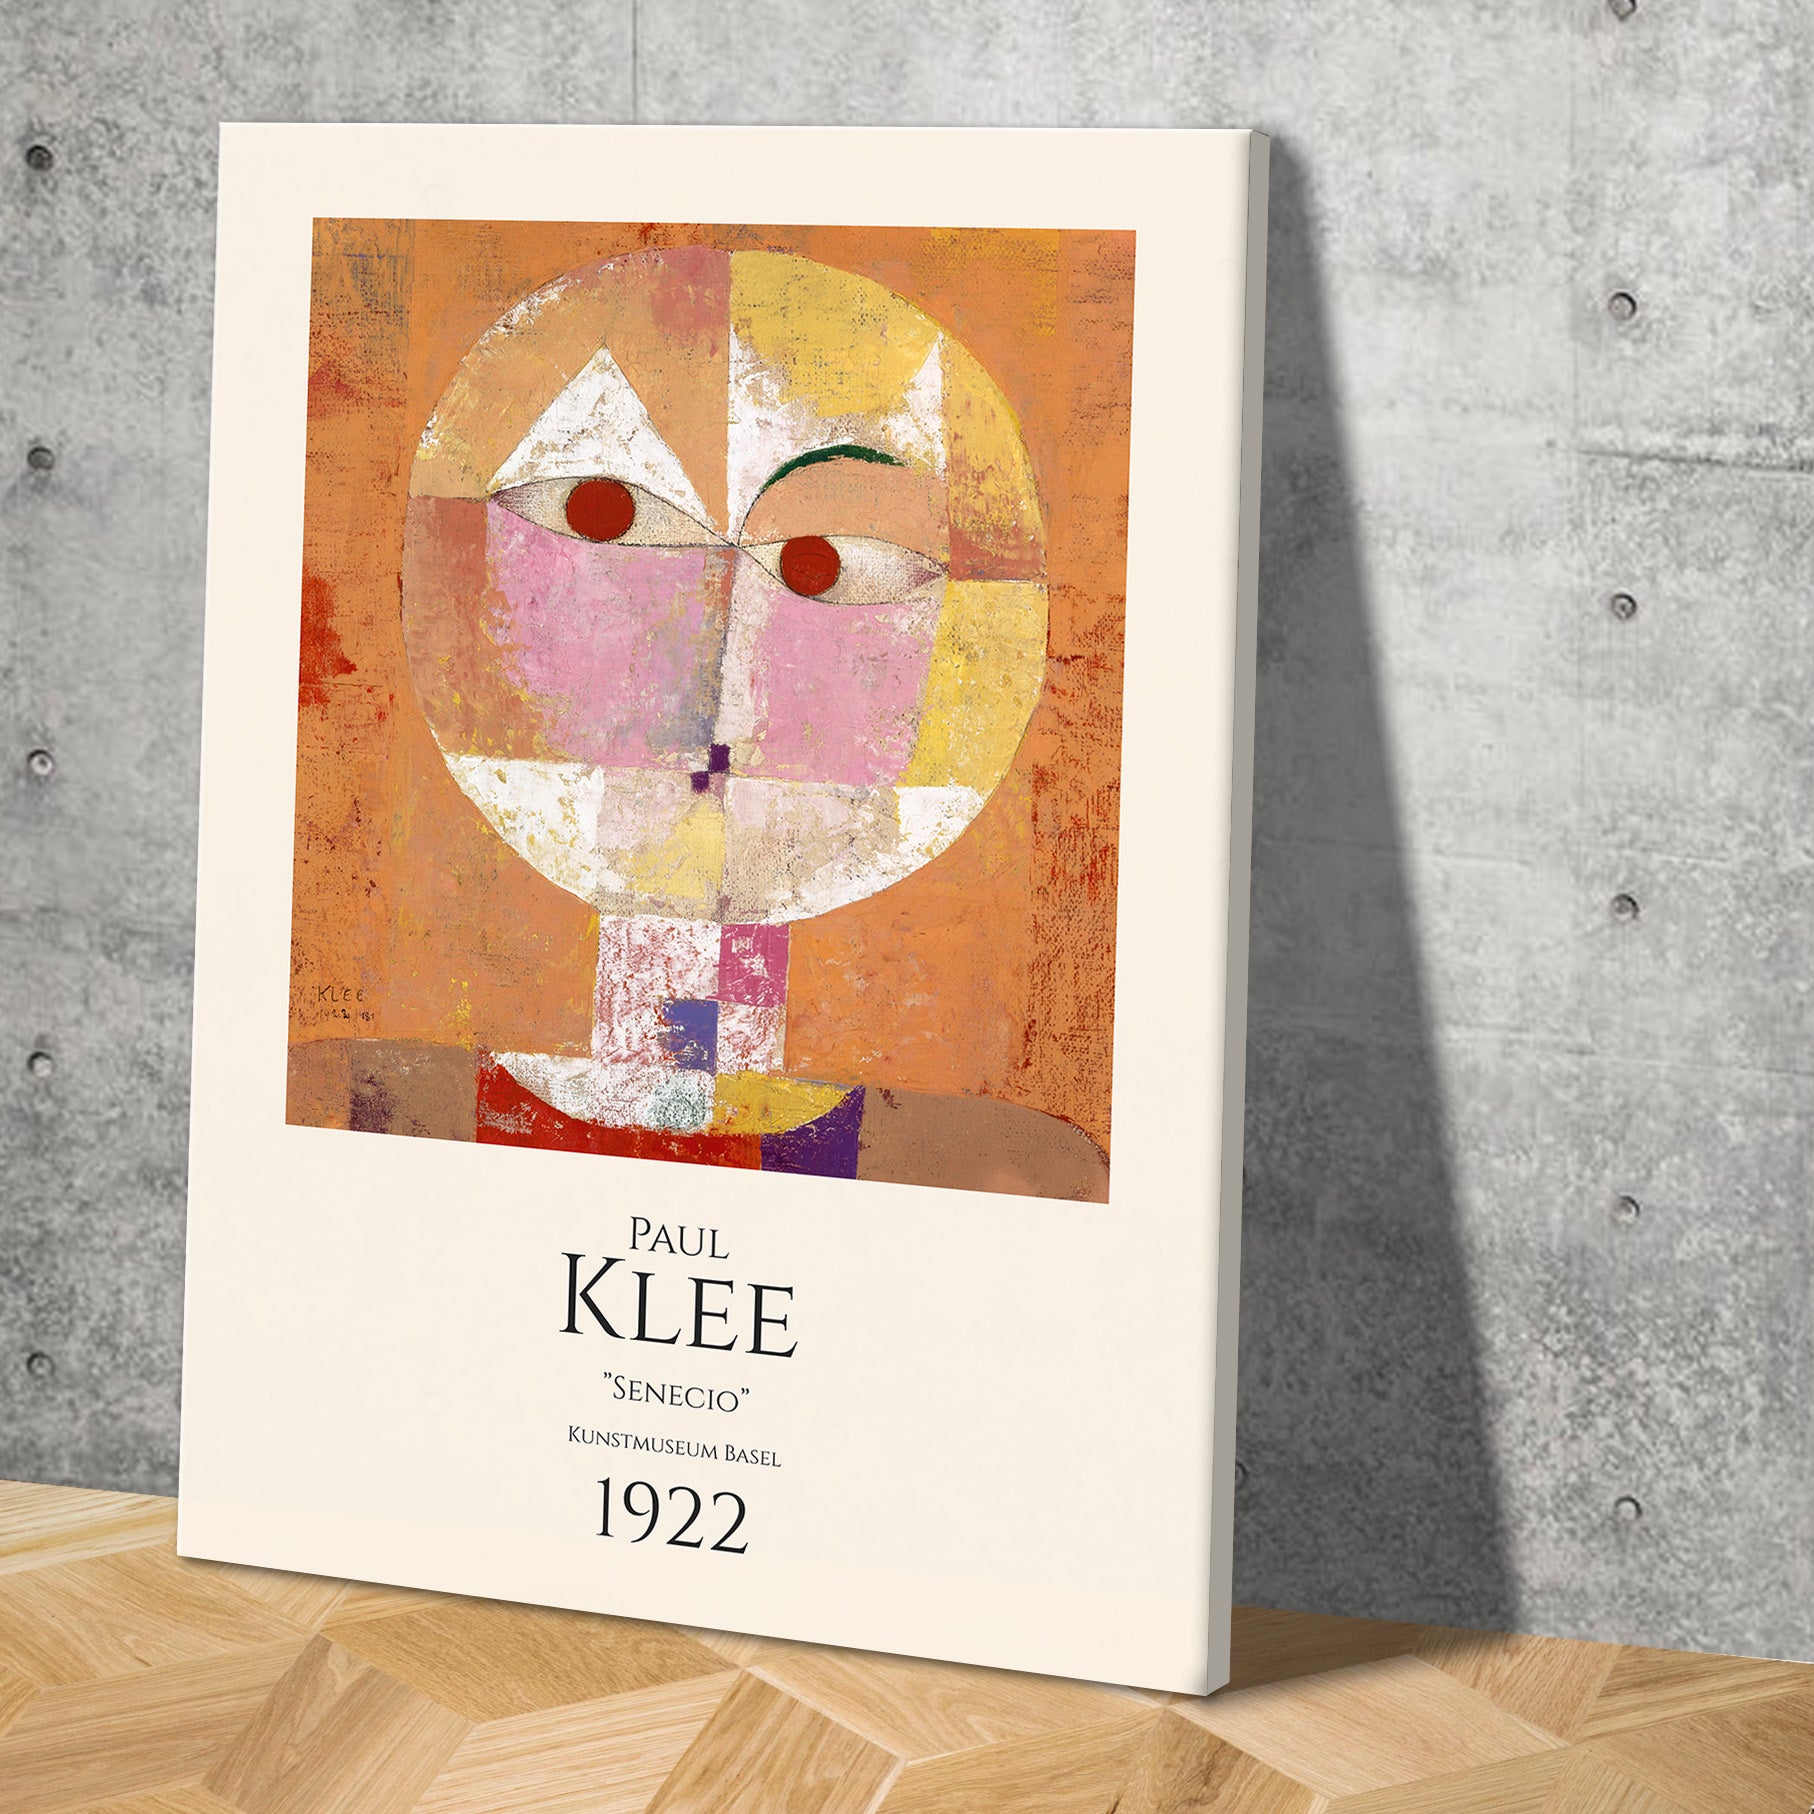 Lærredsbillede med Paul Klee "Senecio"